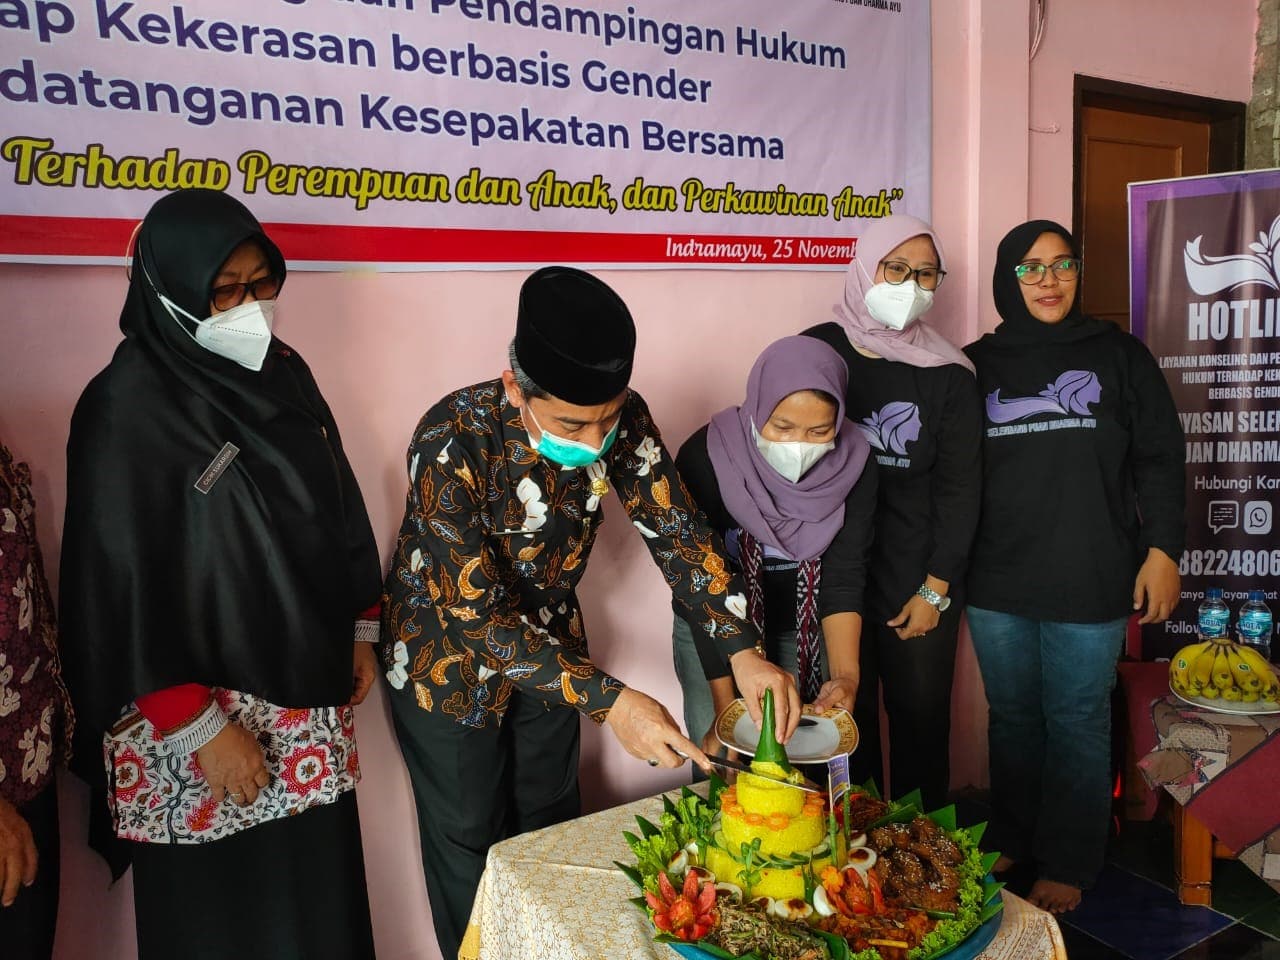 Yayasan Selendang Puan Dharma Ayu, Buka Konseling dan Pendampingan Hukum Kasus Kekerasan Gender